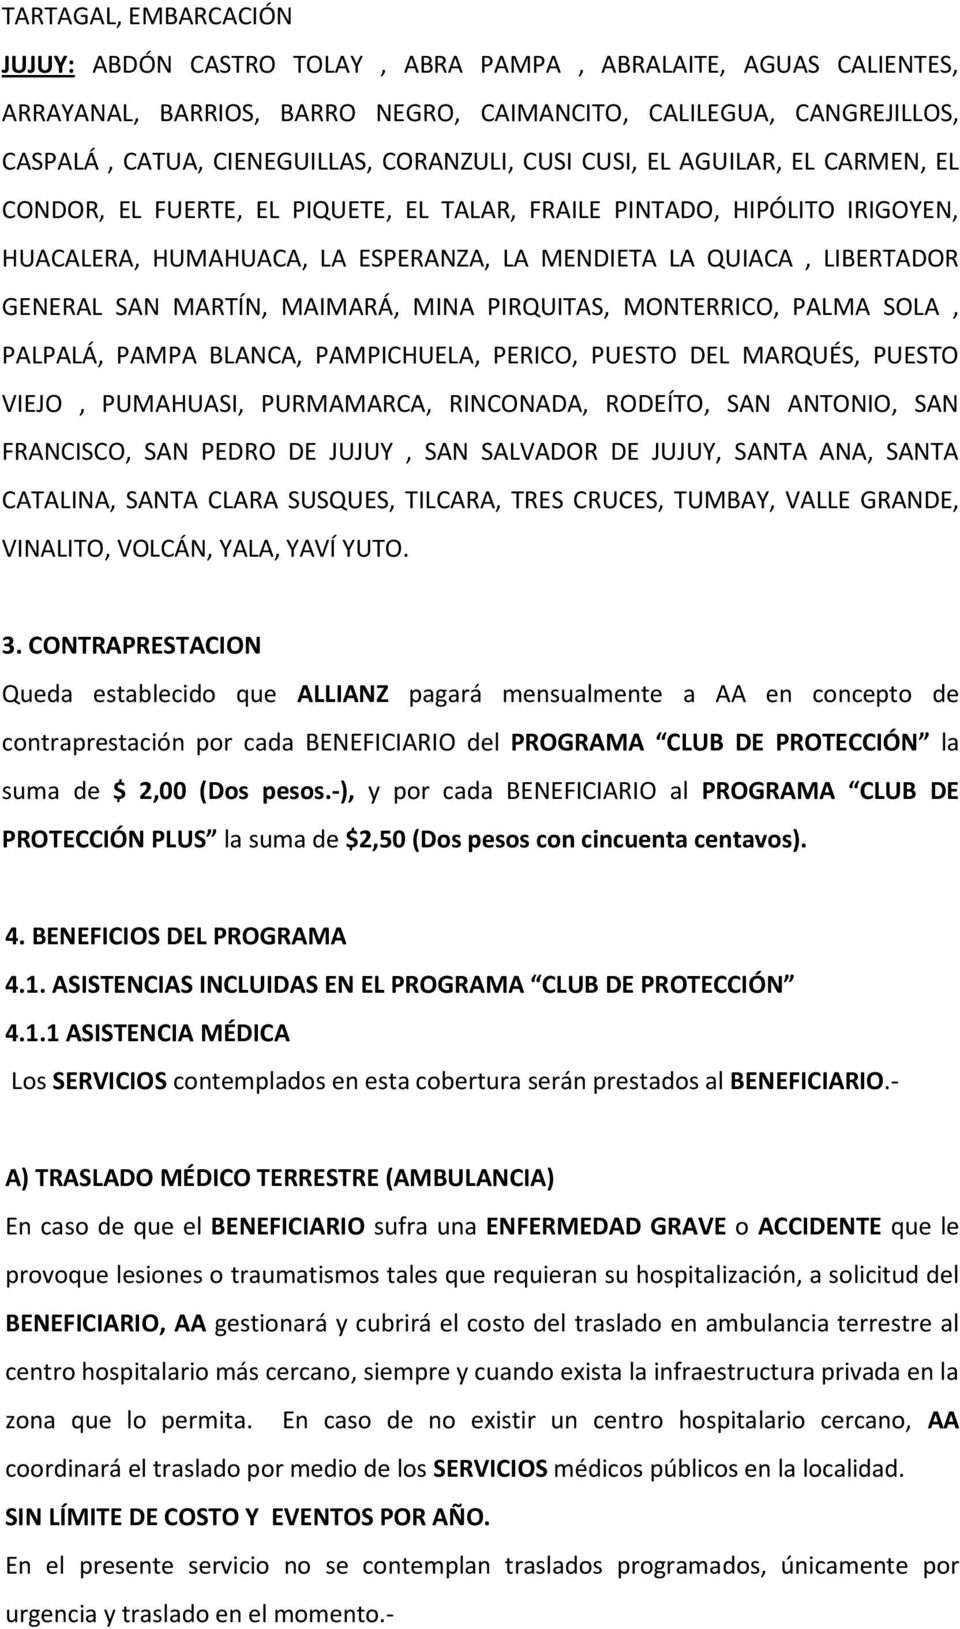 CONDICIONES GENERALES PARA LA PRESTACIÓN DE SERVICIOS DEL PROGRAMA CLUB DE  PROTECCIÓN - PDF Free Download